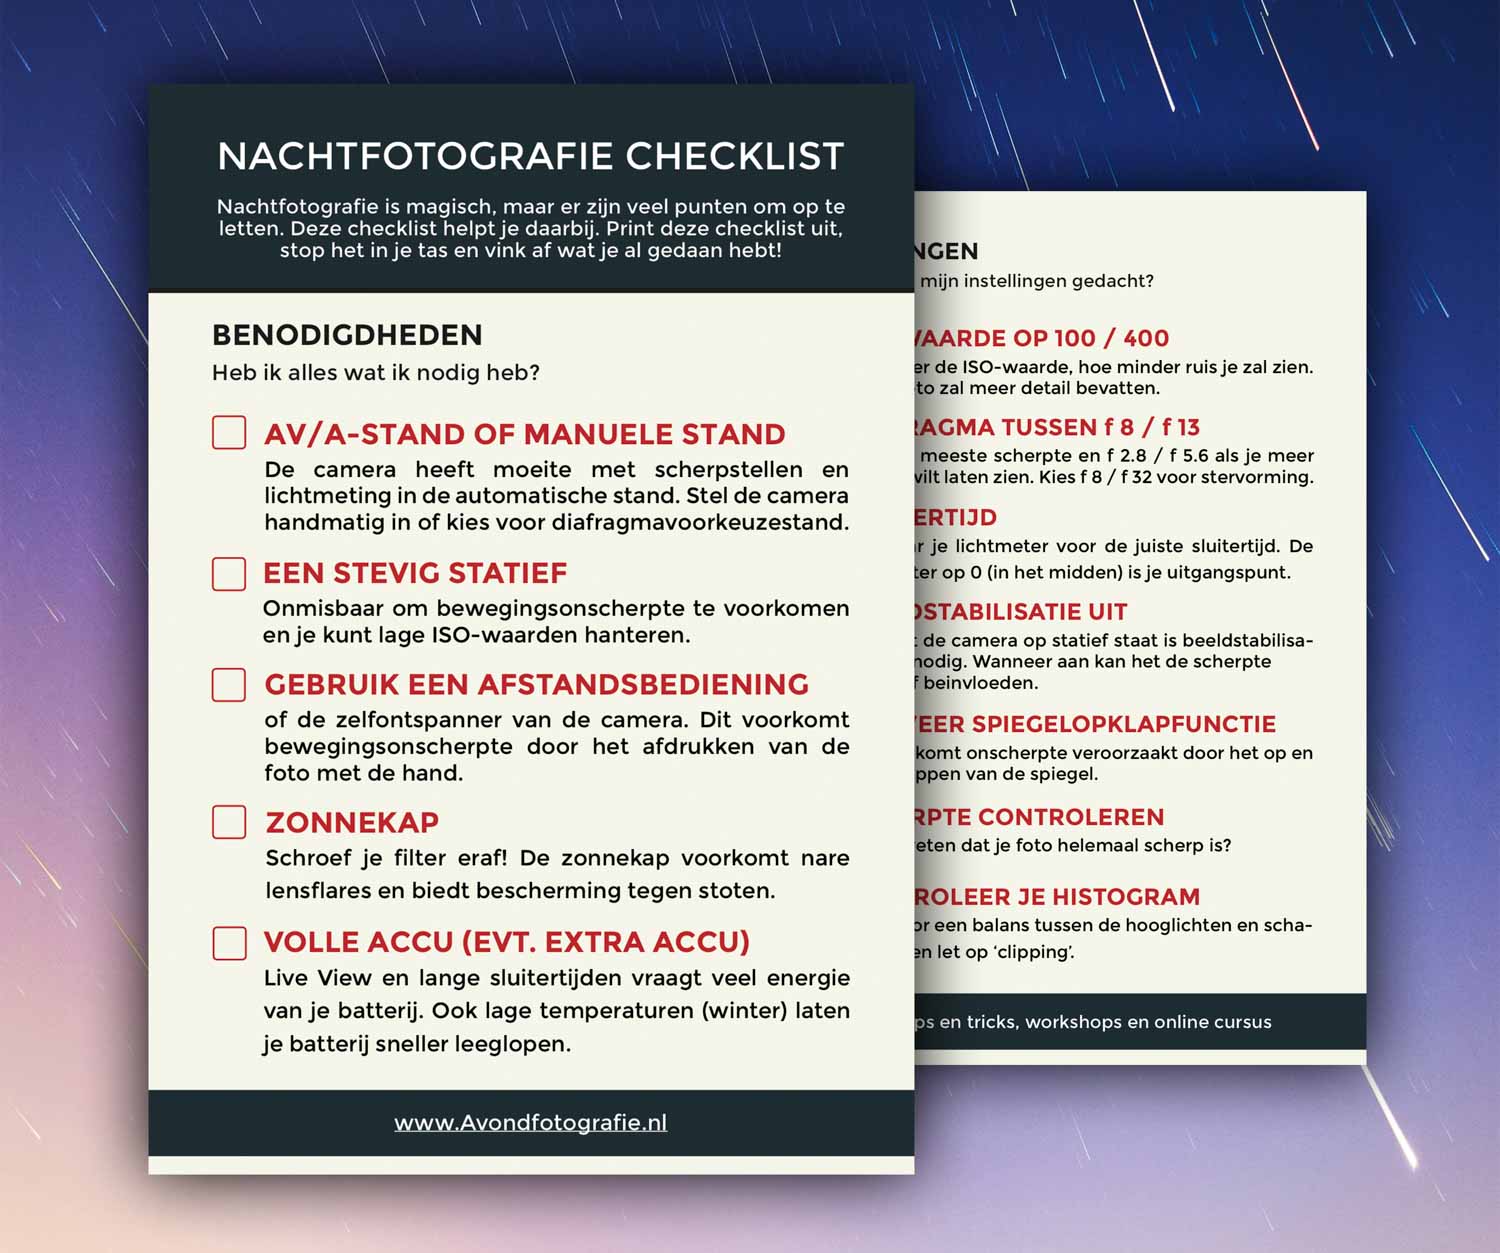 Nachtfotografie checklist - Avondfotografie.nl